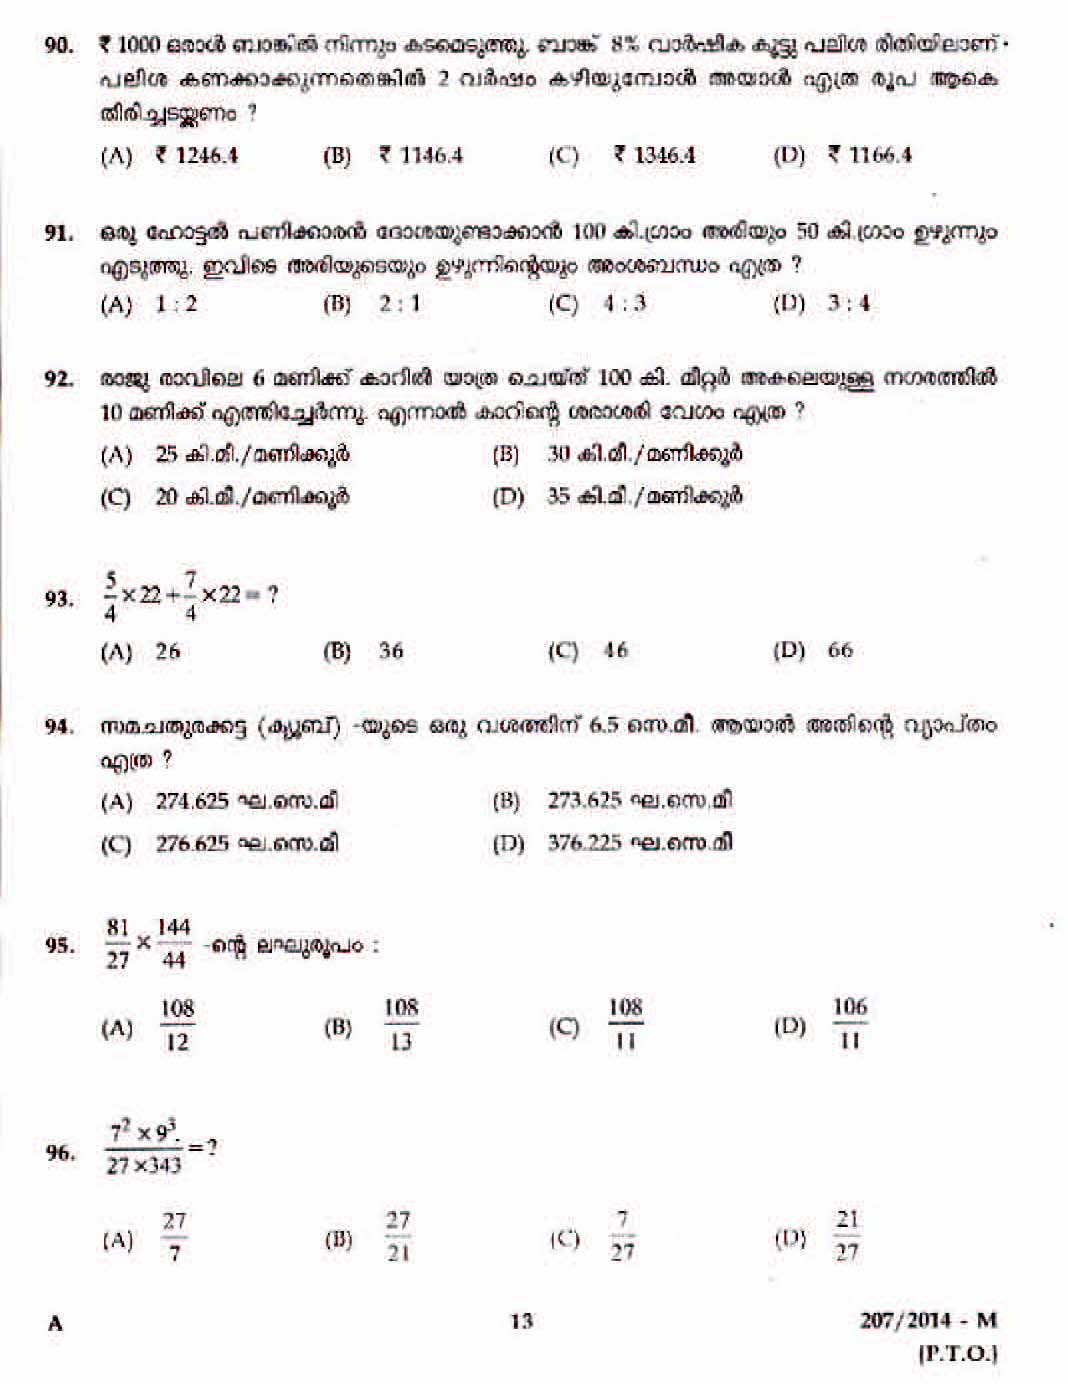 Kerala Last Grade Servants Exam 2014 Question Paper Code 2072014 M 11